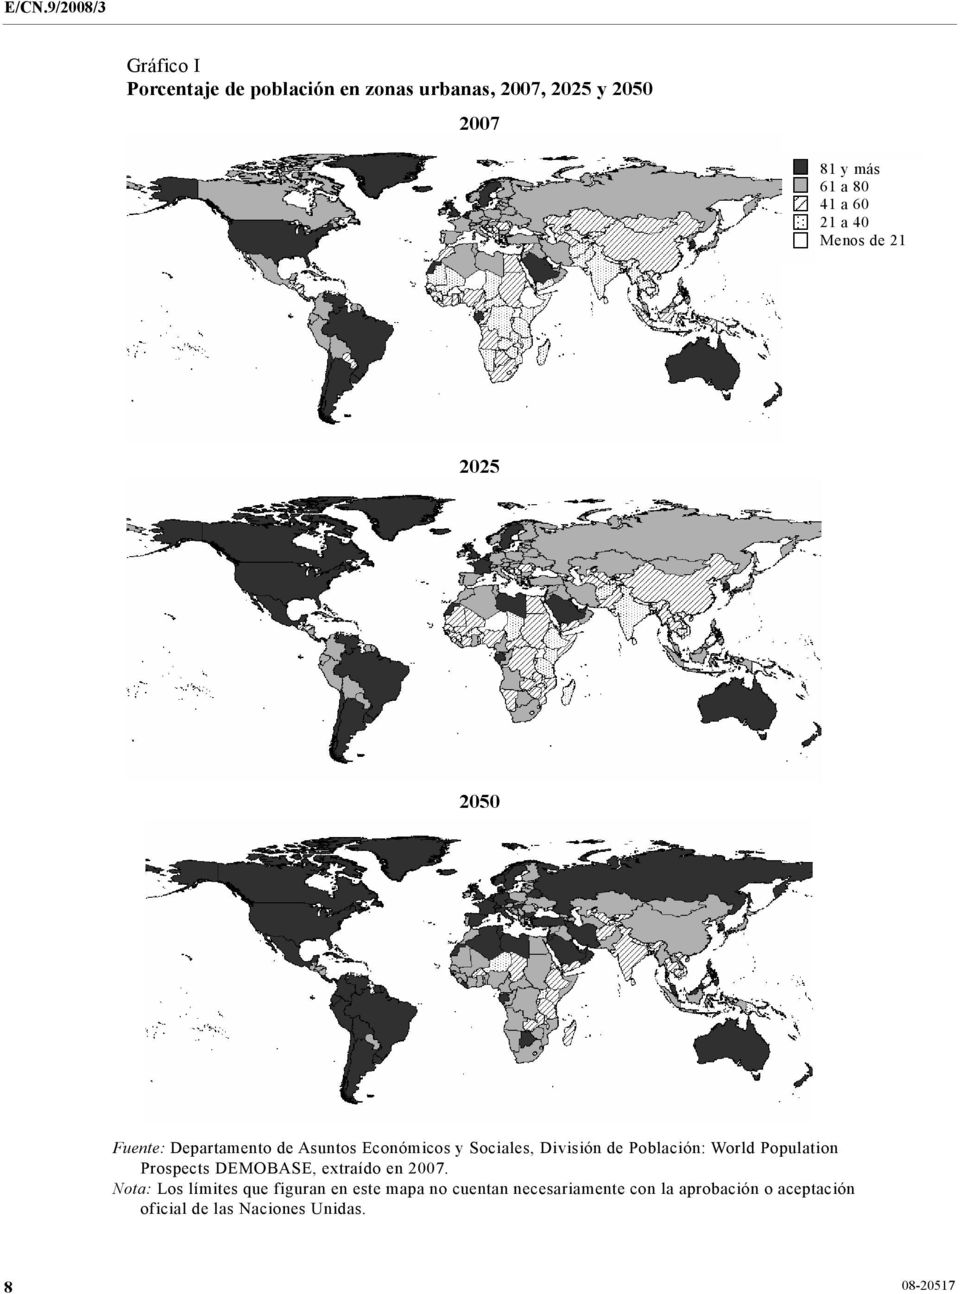 de Población: World Population Prospects DEMOBASE, extraído en 2007.